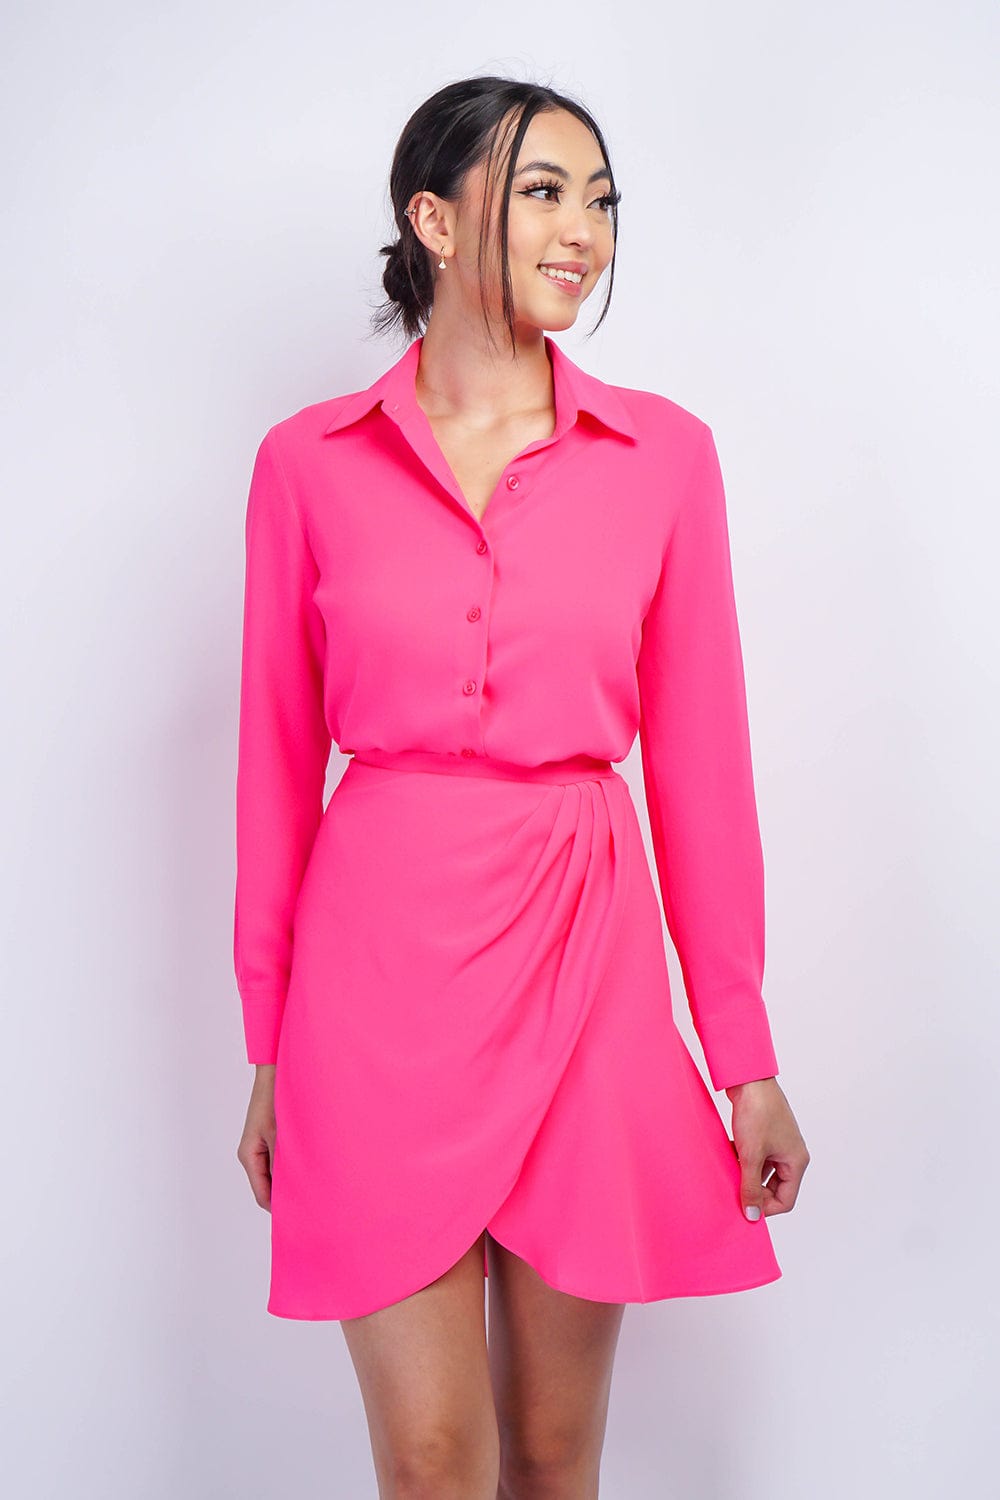 TOPS Barbie Pink Button Up Jennifer Dress Shirt - Chloe Dao